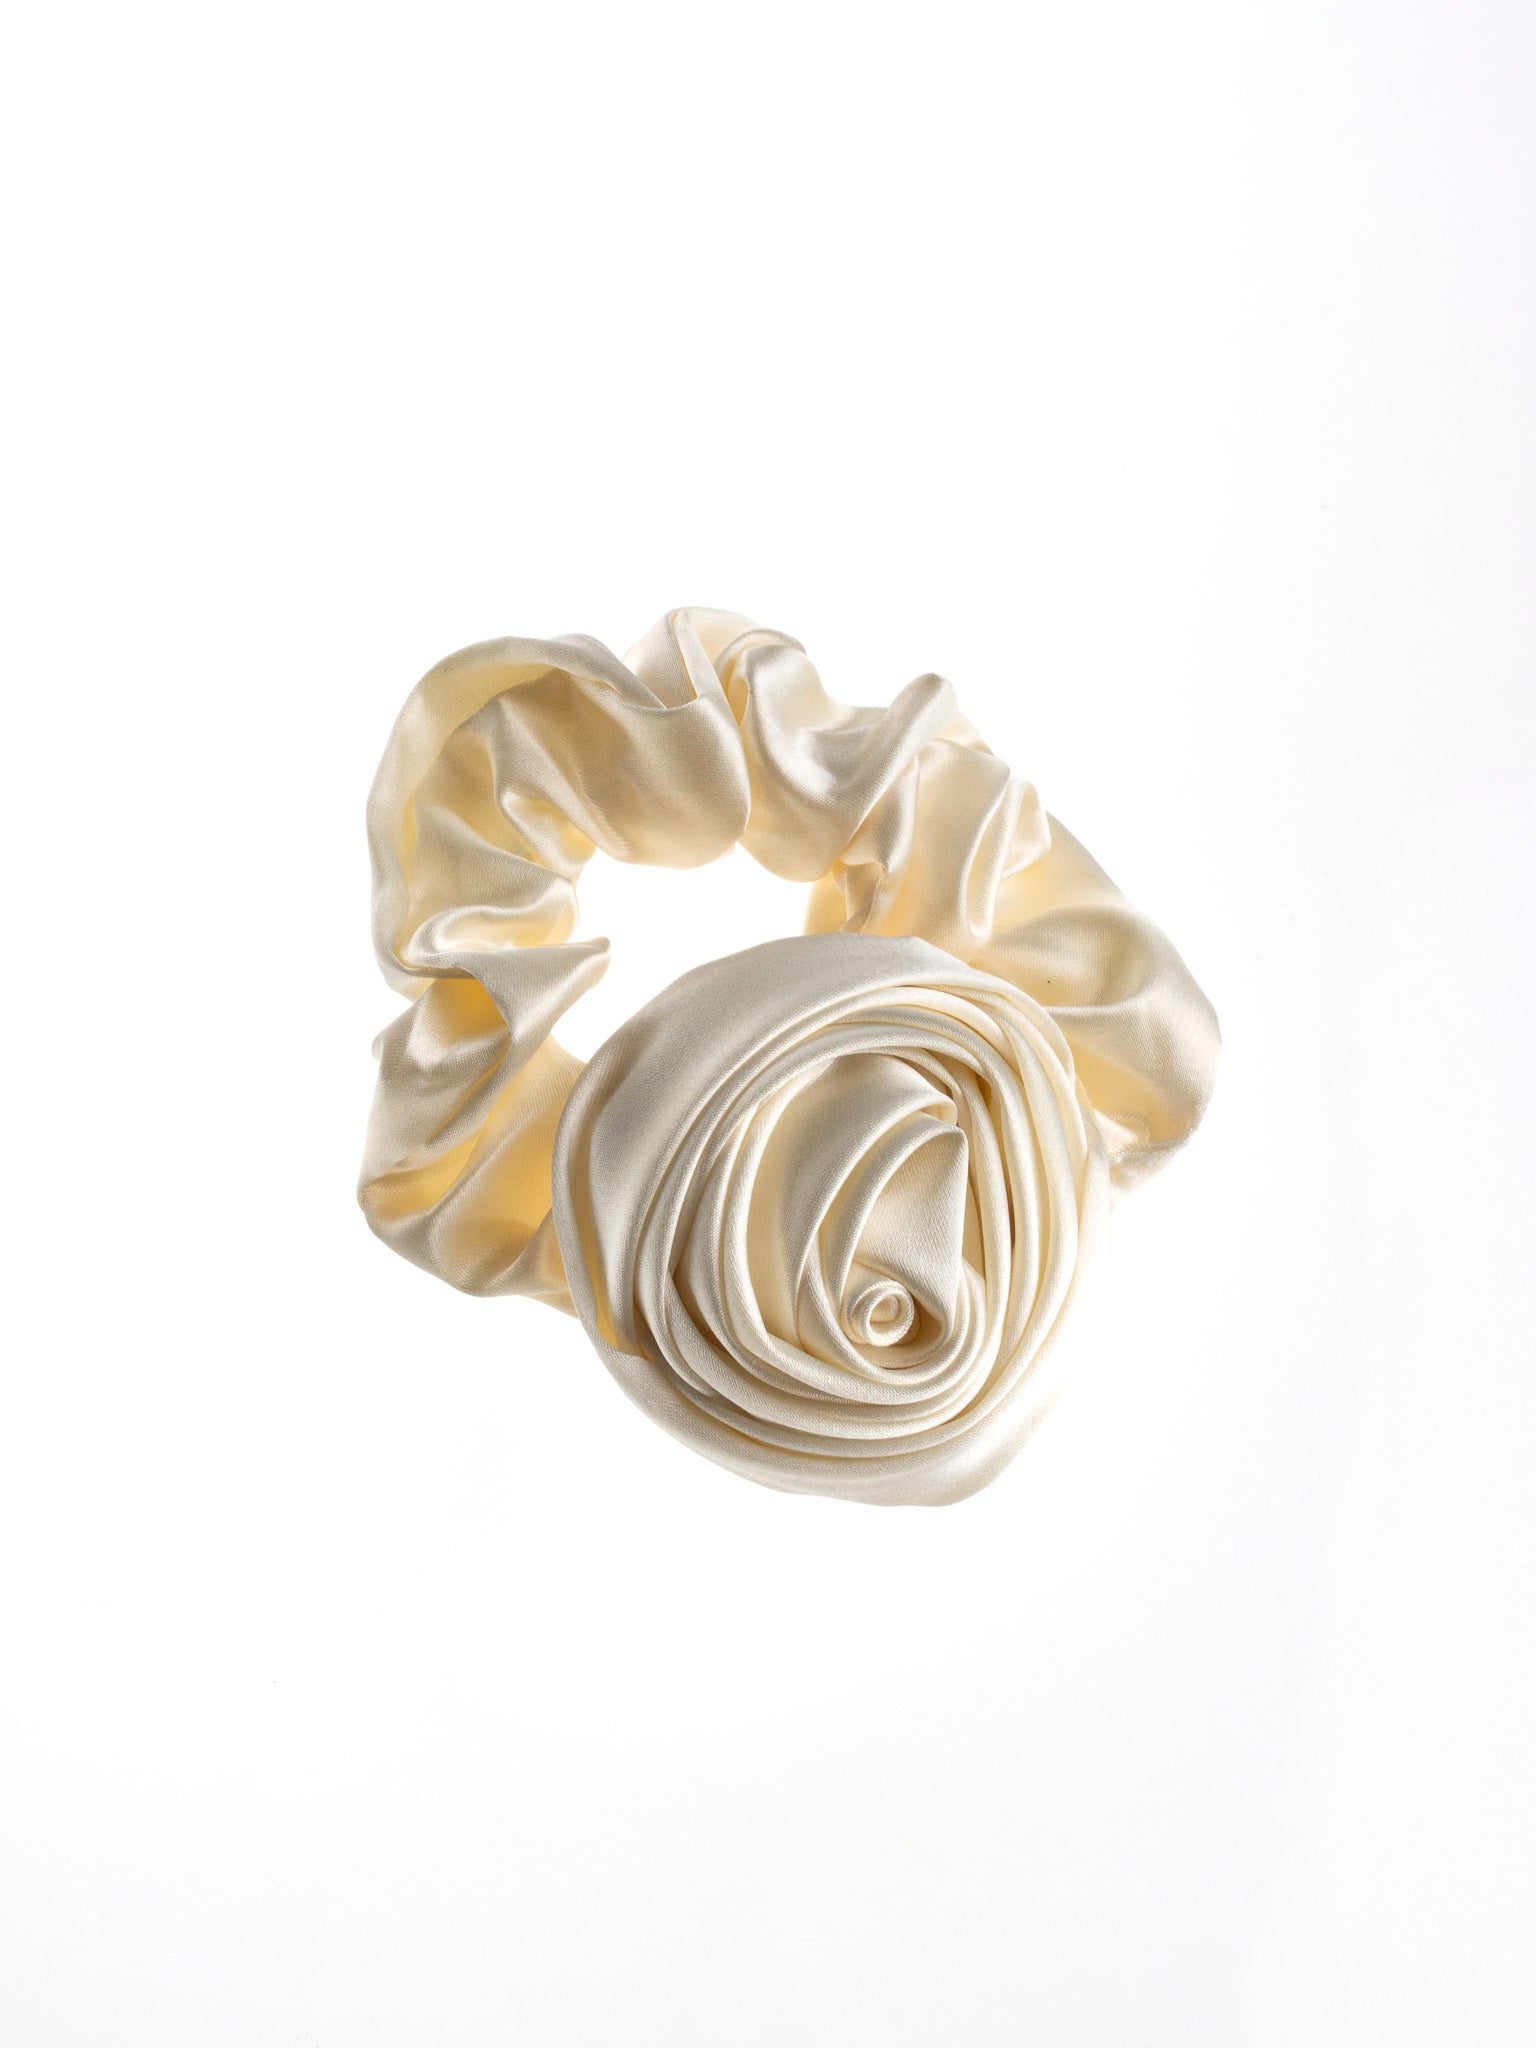 Solar Eclipse - Handmade White Satin Flower Scrunchie